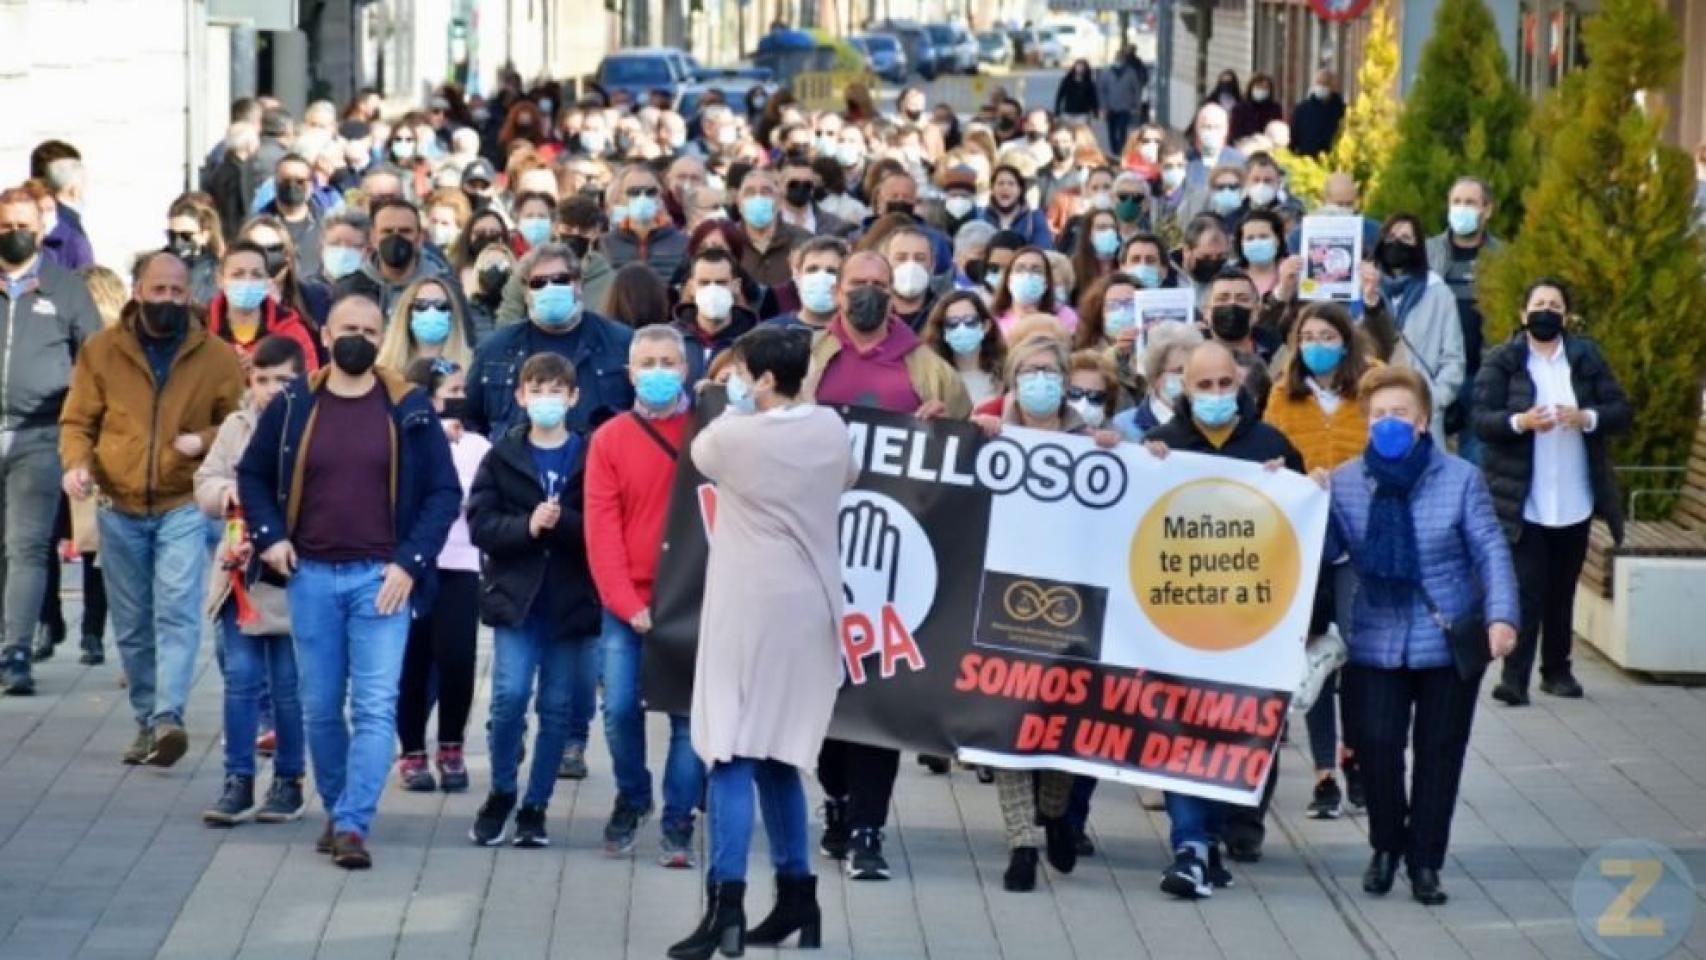 Manifestación este domingo en Tomelloso contra la ocupación ilegal de viviendas (Foto: La Voz de Tomelloso)